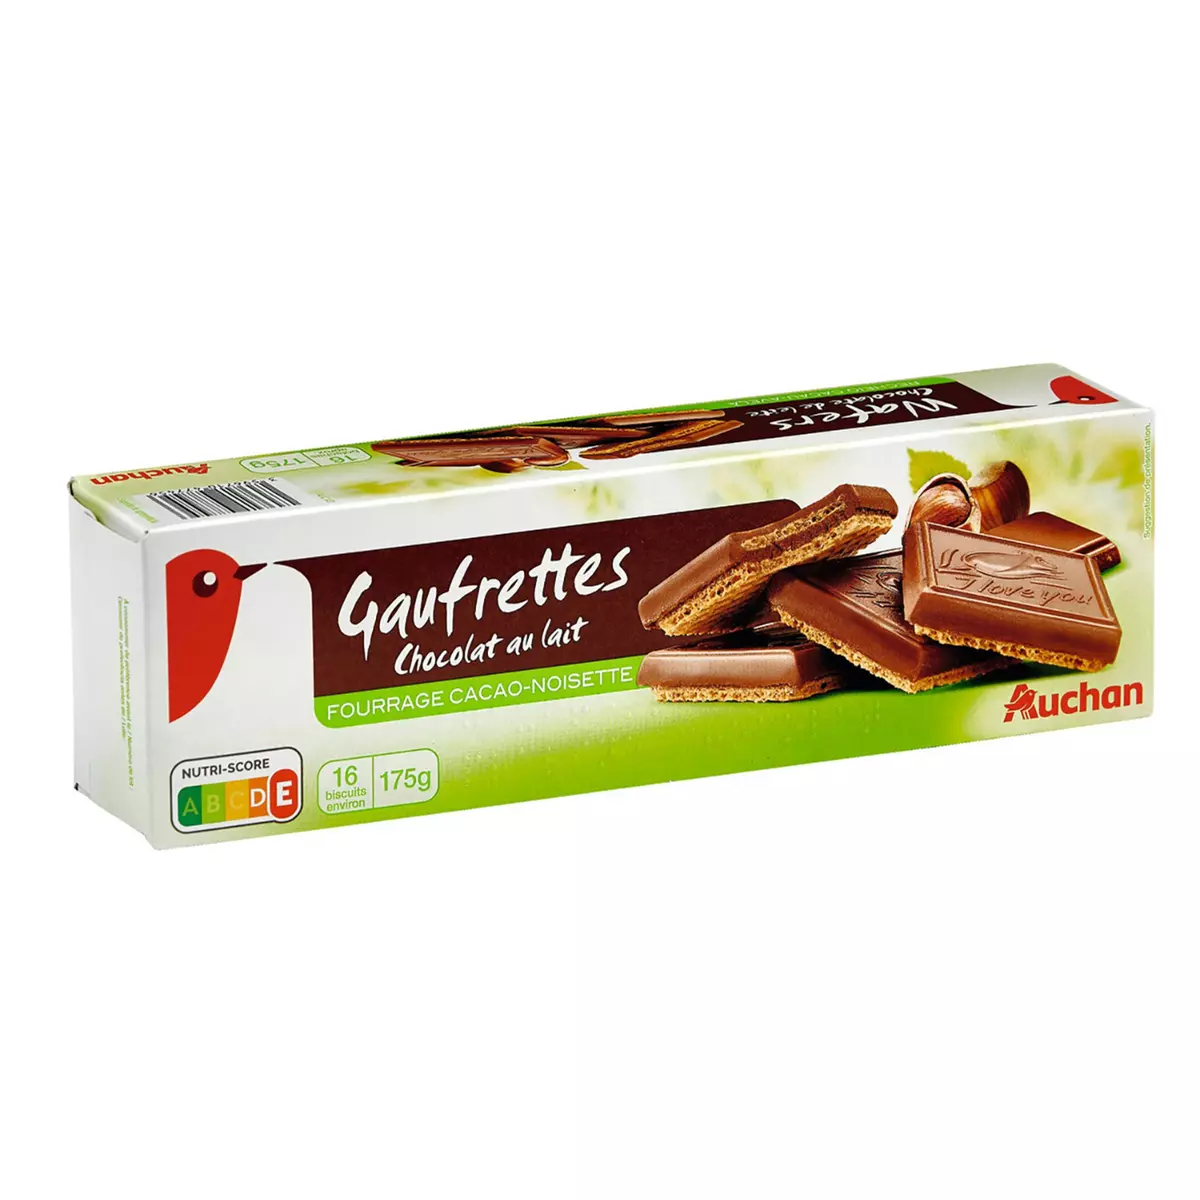 AUCHAN Gaufrettes chocolat au lait fourrage cacao noisette 16 biscuits 175g